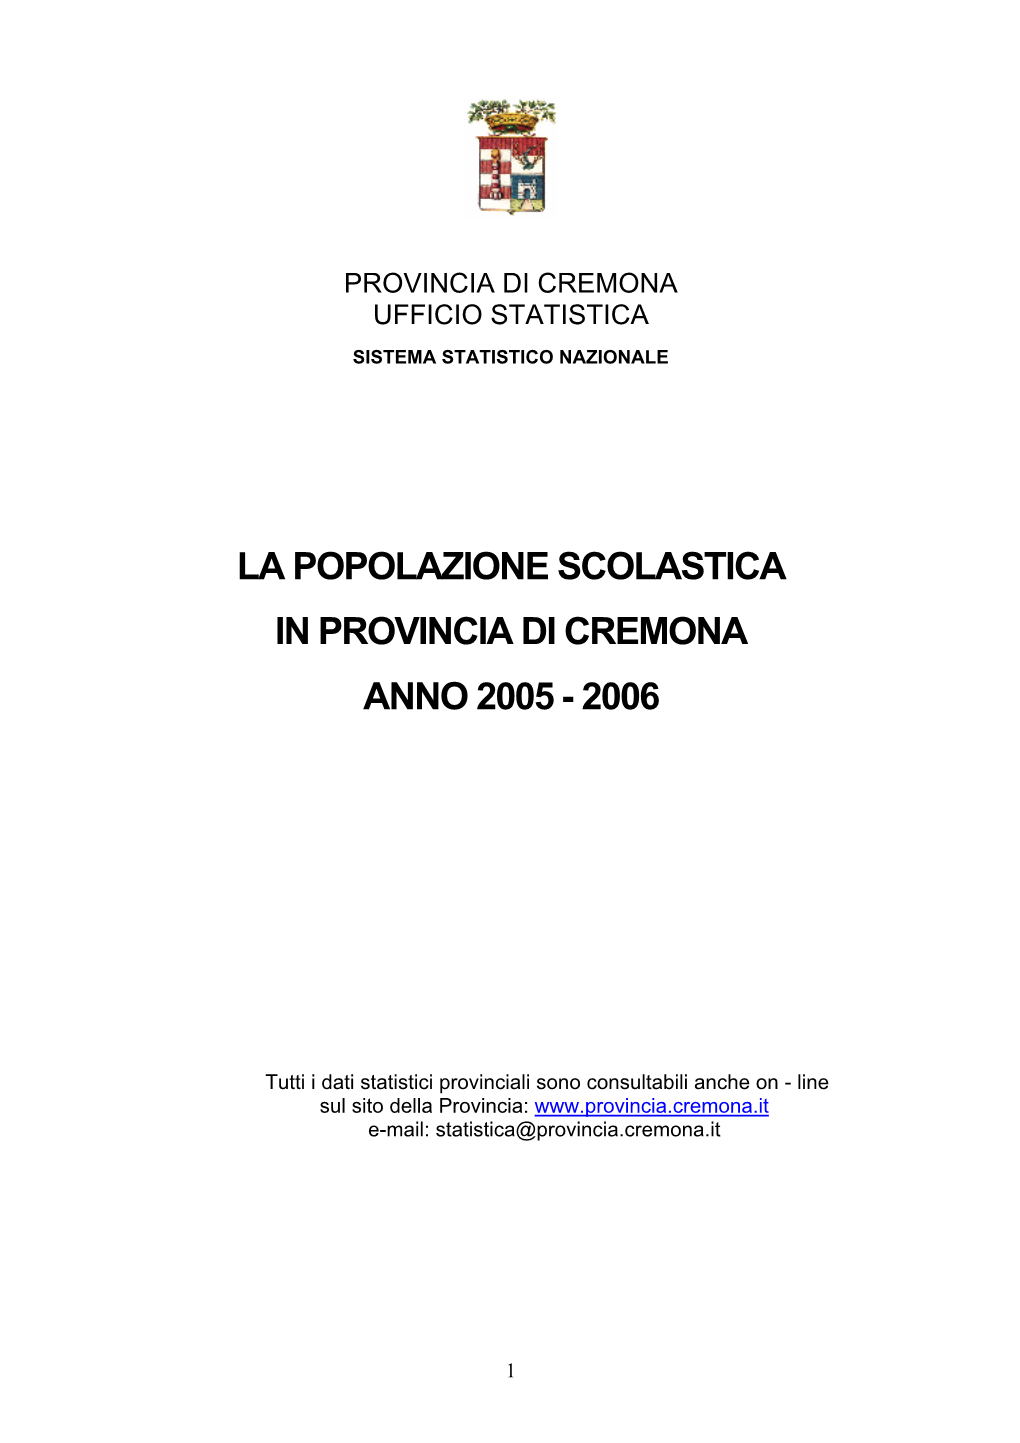 La Popolazione Scolastica Provinciale A.S. 2005